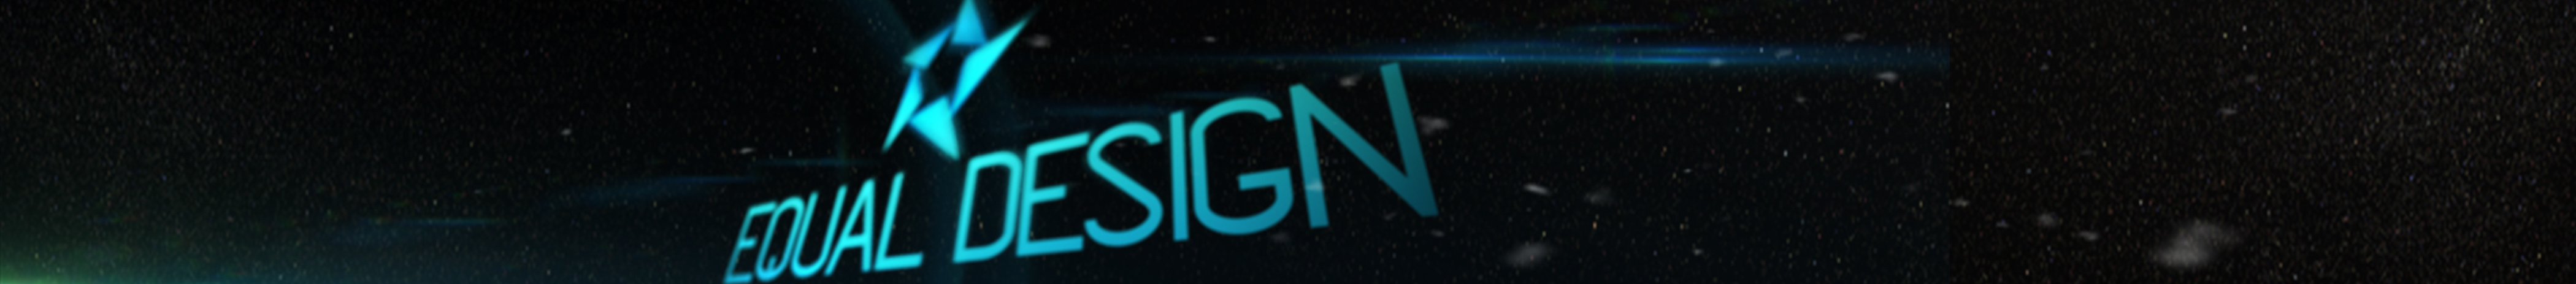 Profil-Banner von Equal Design